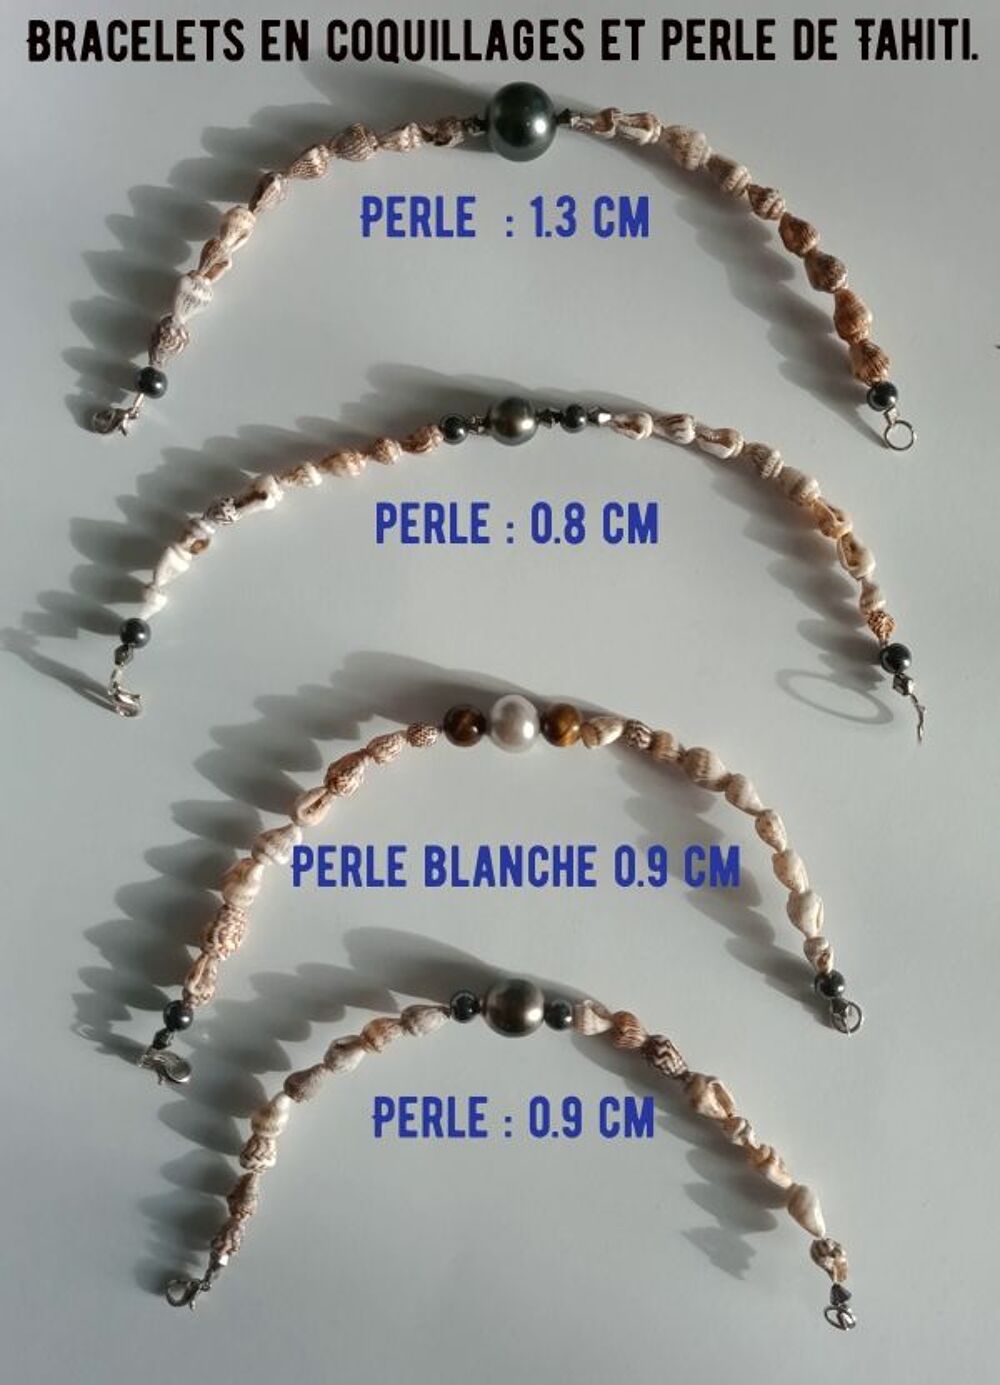 Bracelets en coquillages et perle de Tahiti.
Bijoux et montres